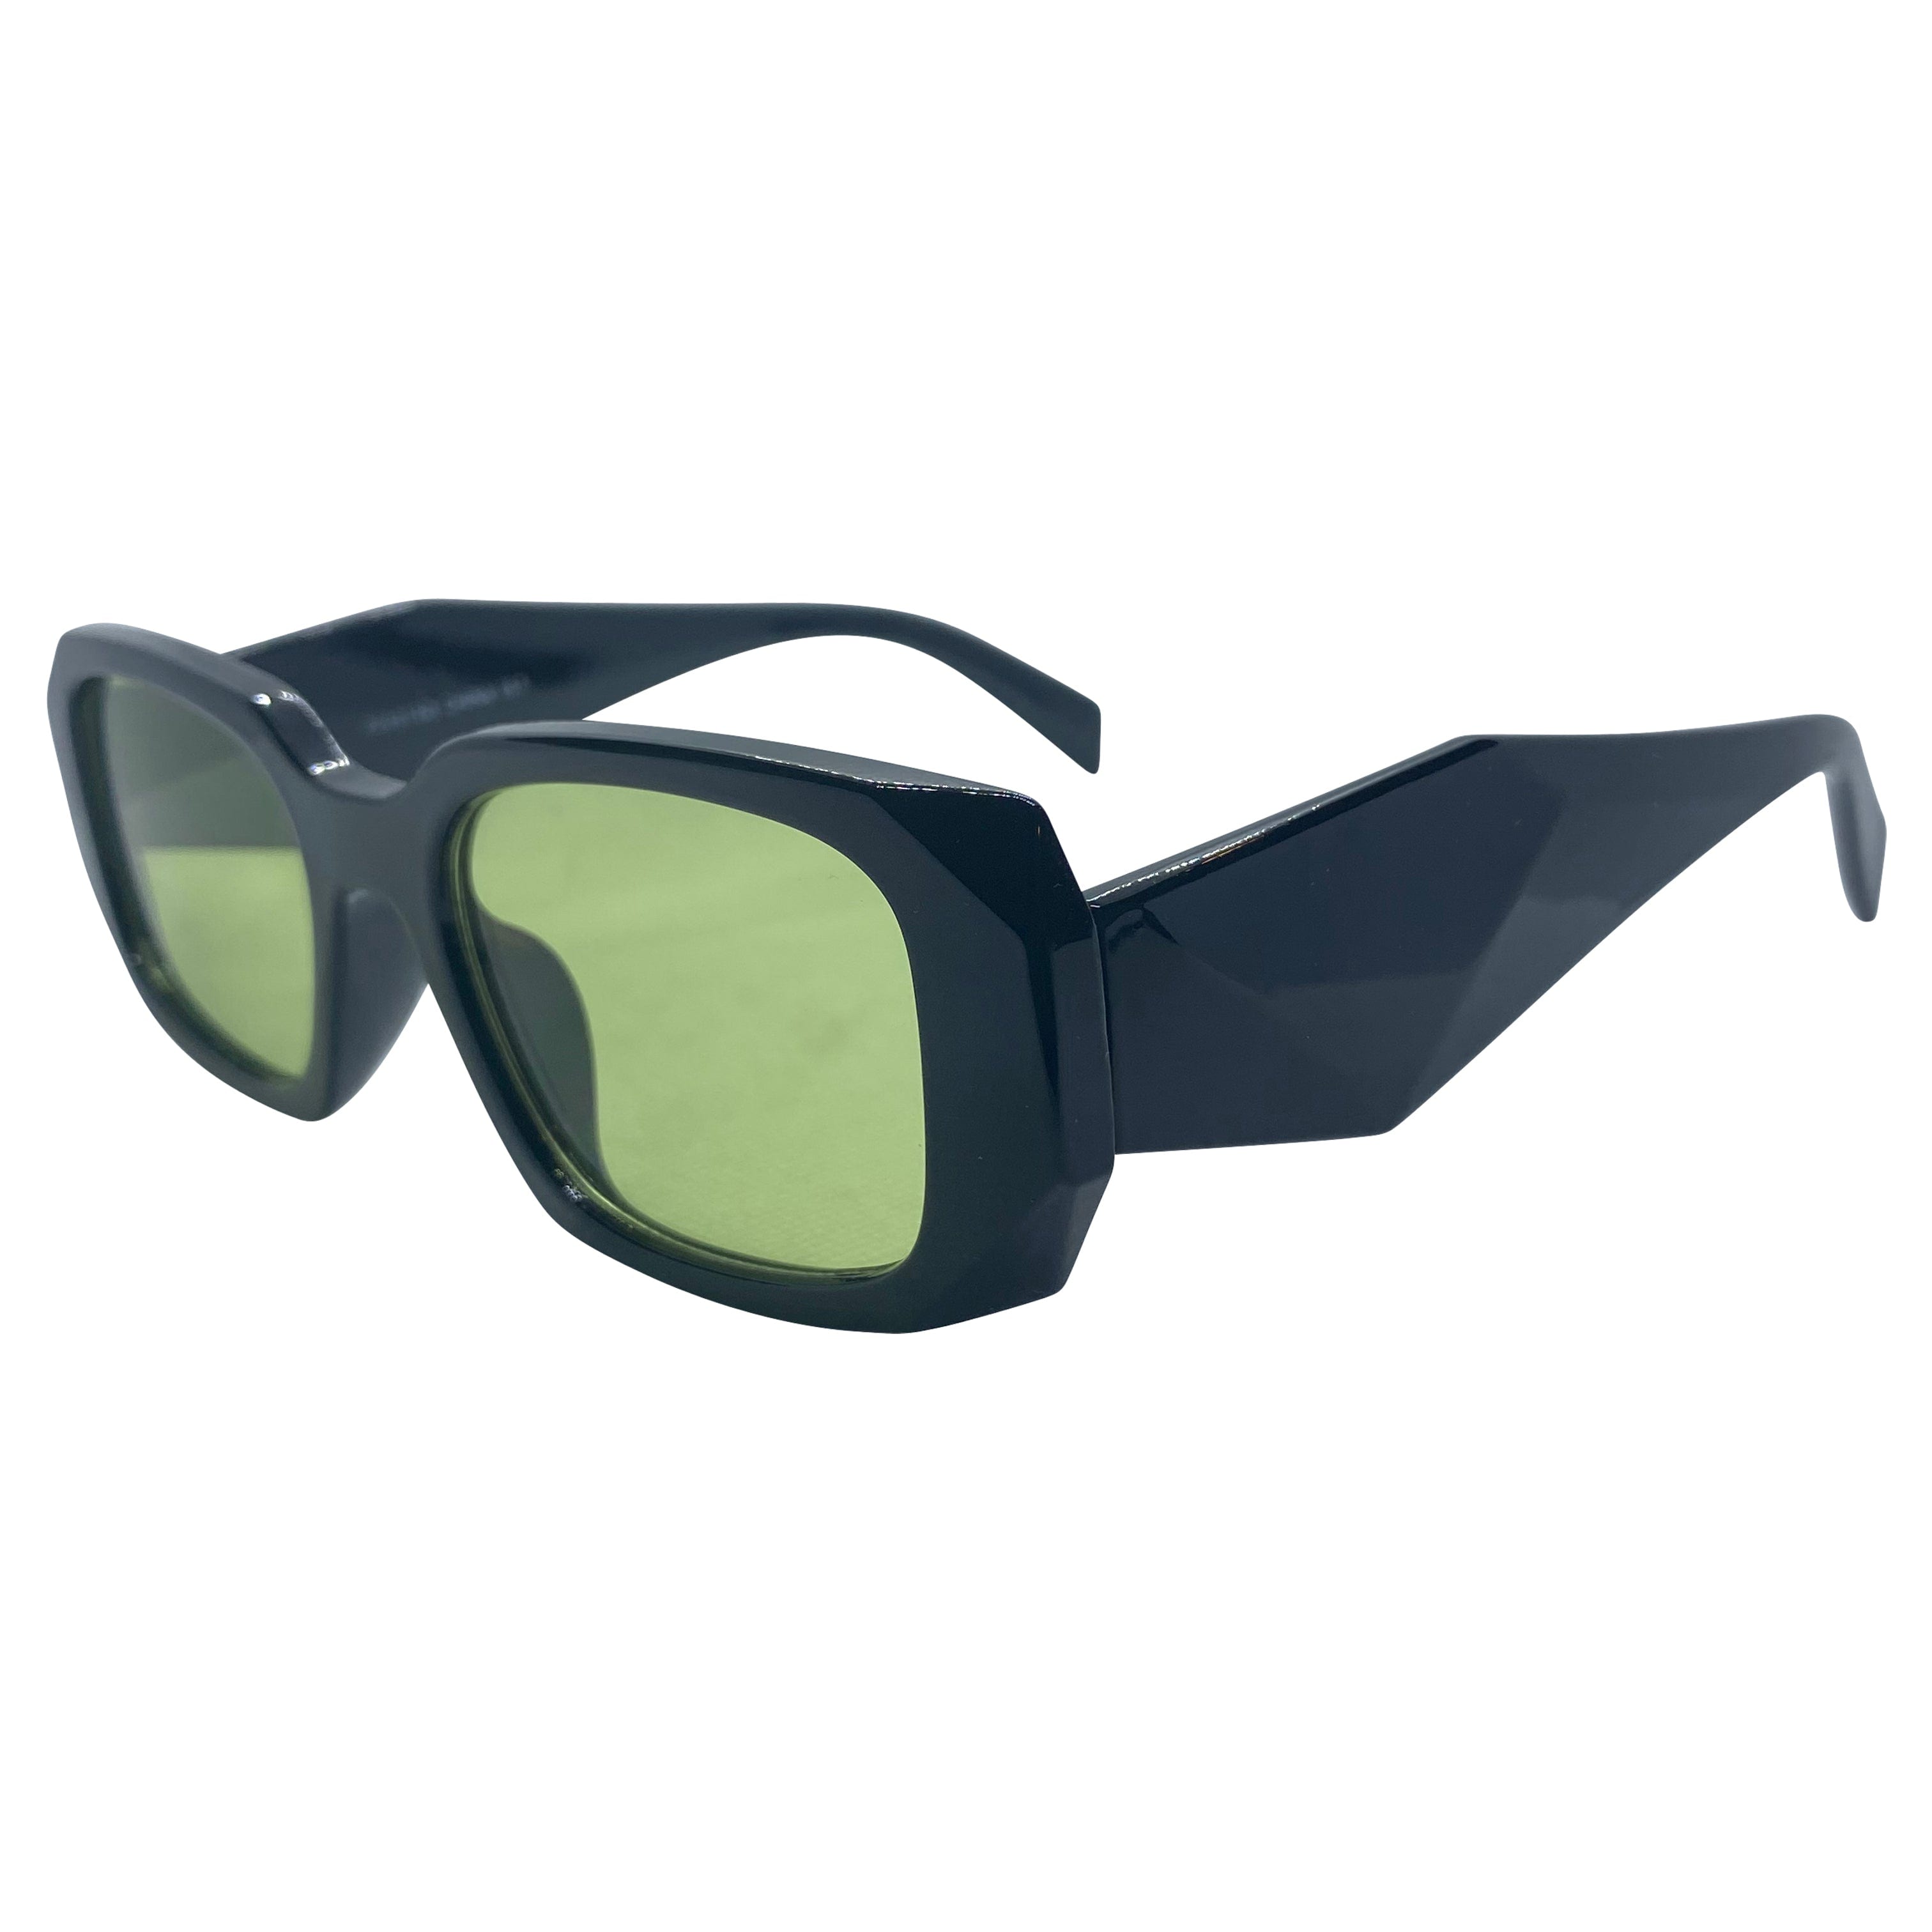 KNIGHT Black/Green Square Sunglasses